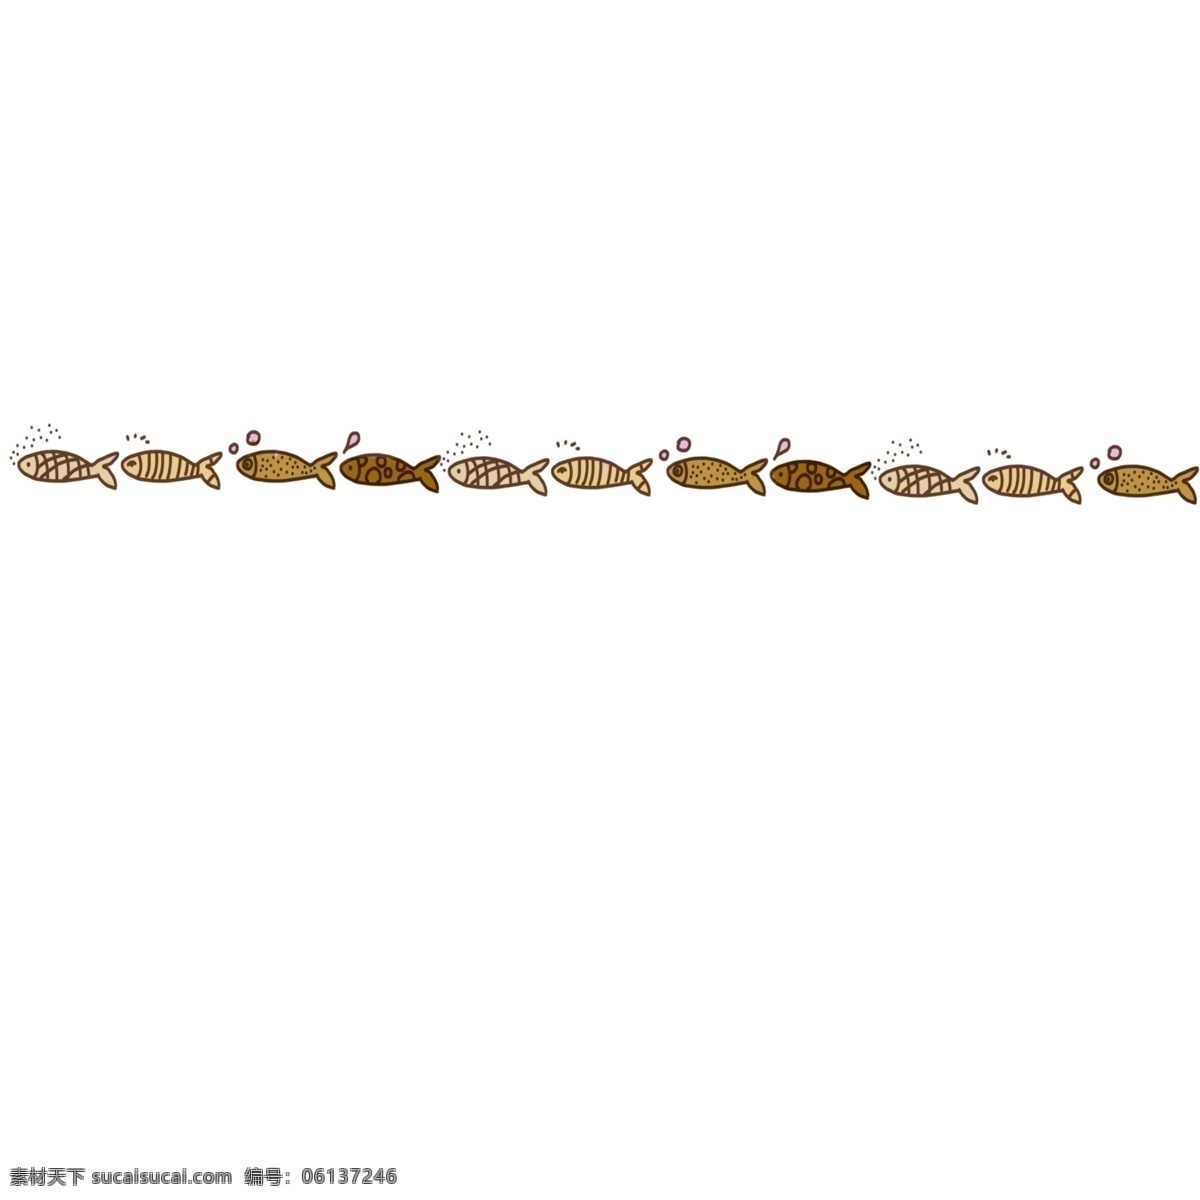 水 生物 小鱼 分割线 水产分割线 一排鱼 水生物分割线 小鱼分割线 卡通的分割线 动物 插画